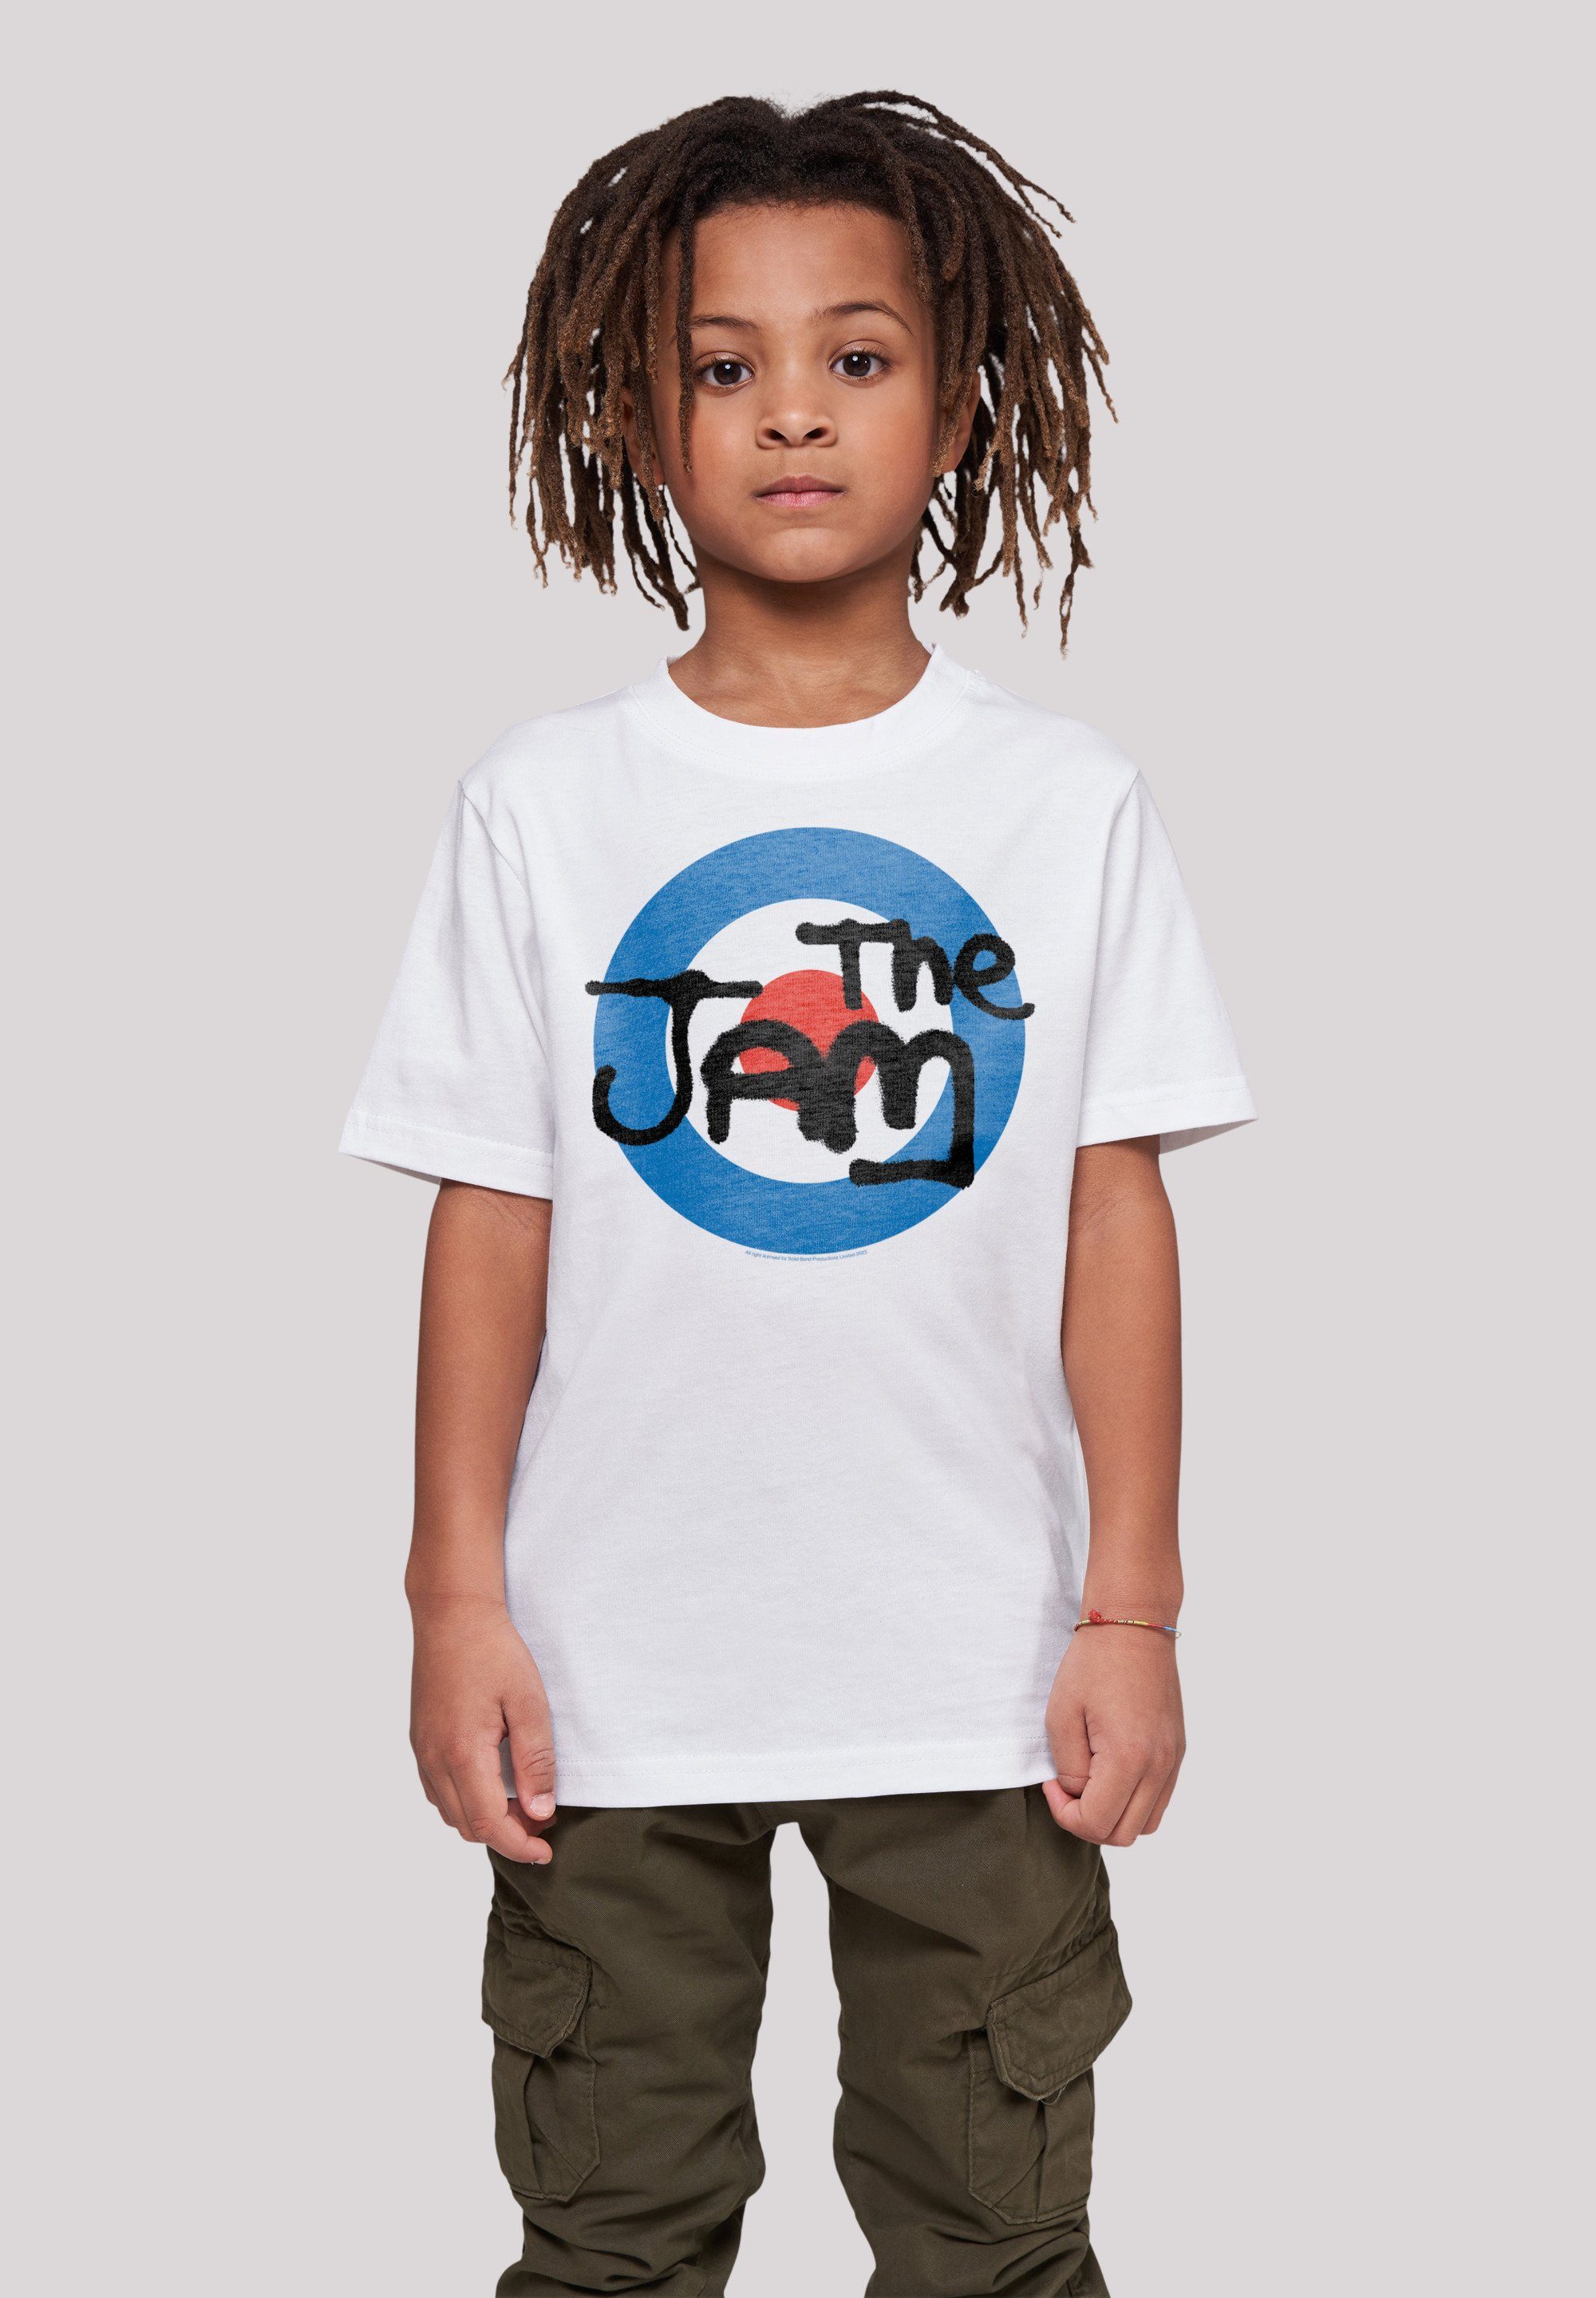 The Jam Sehr T-Shirt F4NT4STIC Qualität, Tragekomfort hohem Classic Logo Premium weicher Band Baumwollstoff mit